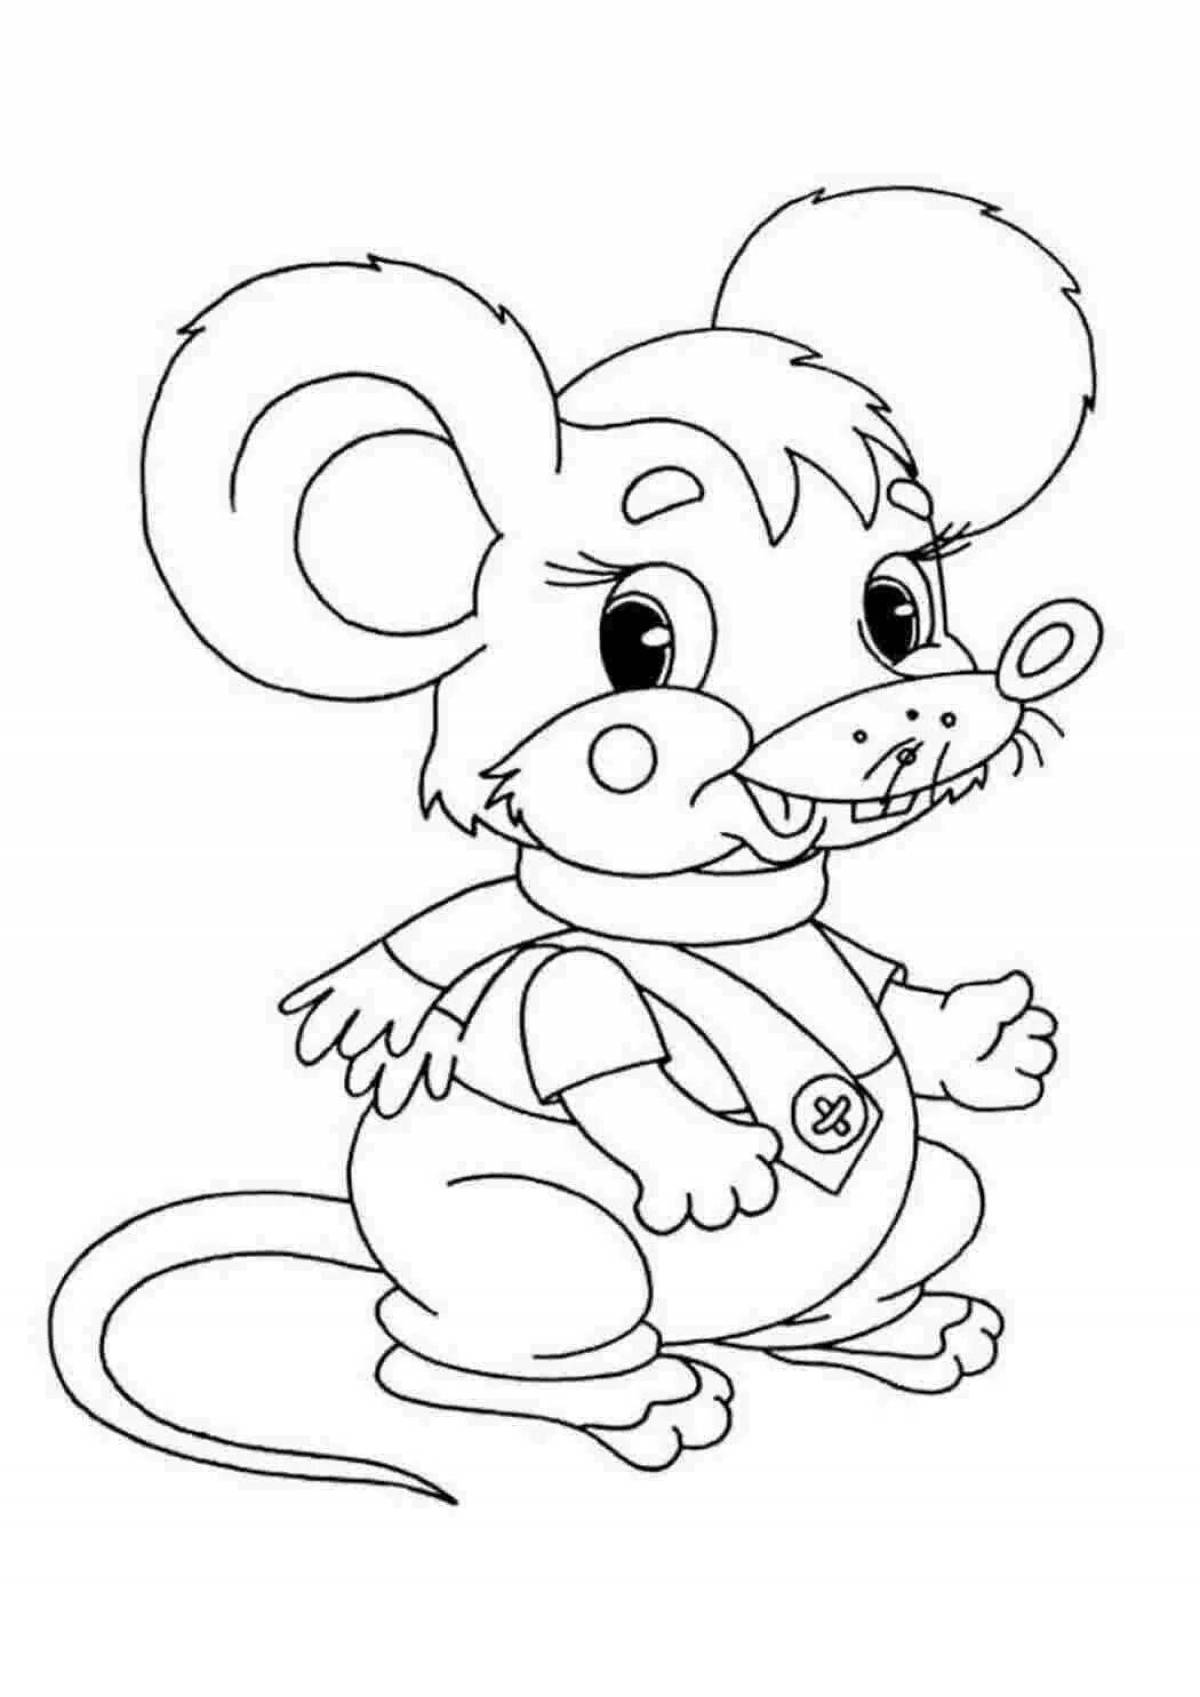 Раскраска зверята распечатать. Раскраска мышка. Мышонок раскраска для детей. Раскраска зверята для детей. Мышка раскраска для детей.